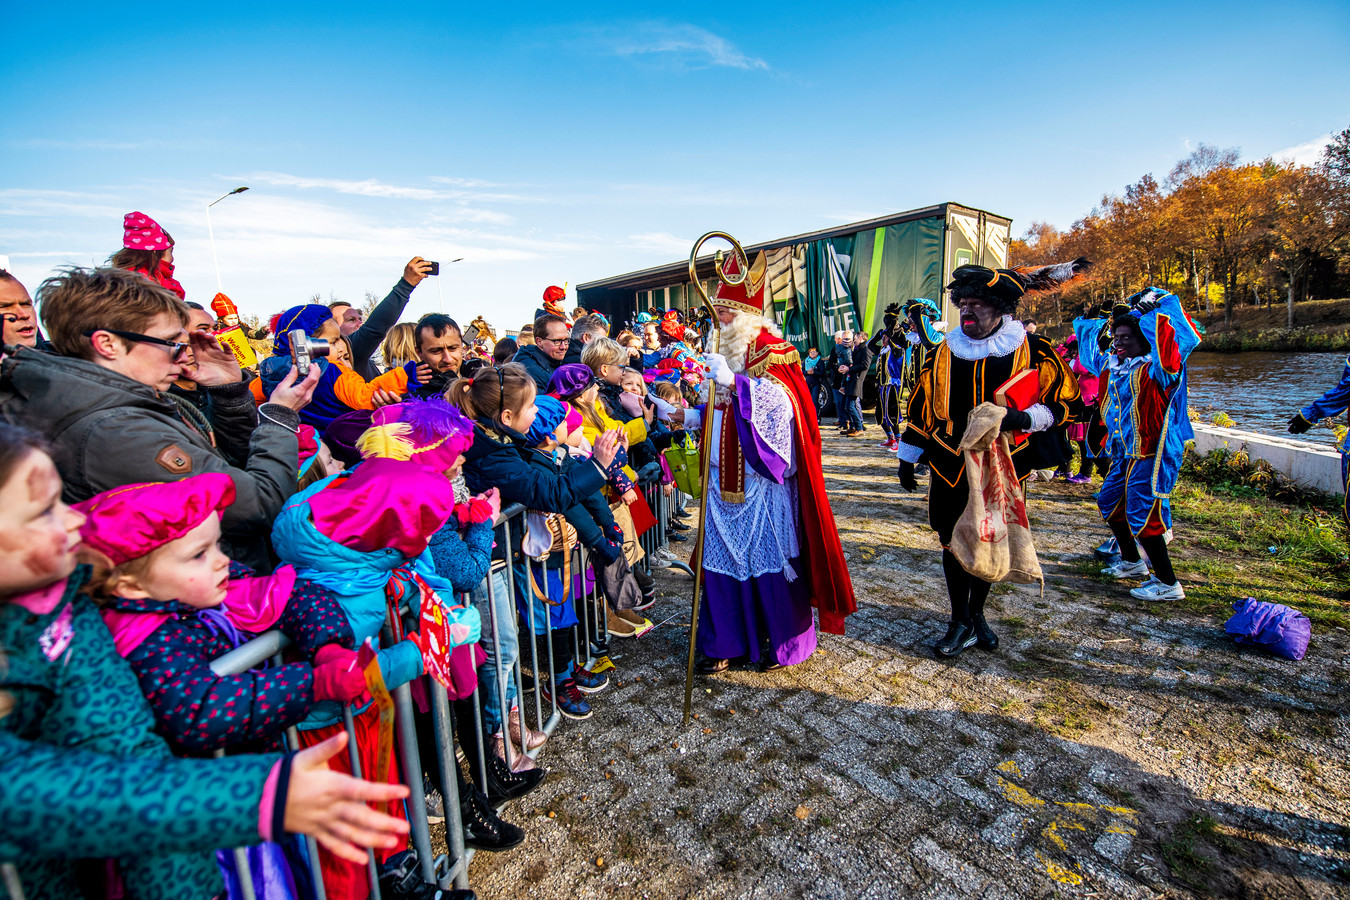 zoete smaak slank Brig Een high five met Zwarte Piet: intocht van Sinterklaas in Best en Nuenen |  Foto | ed.nl